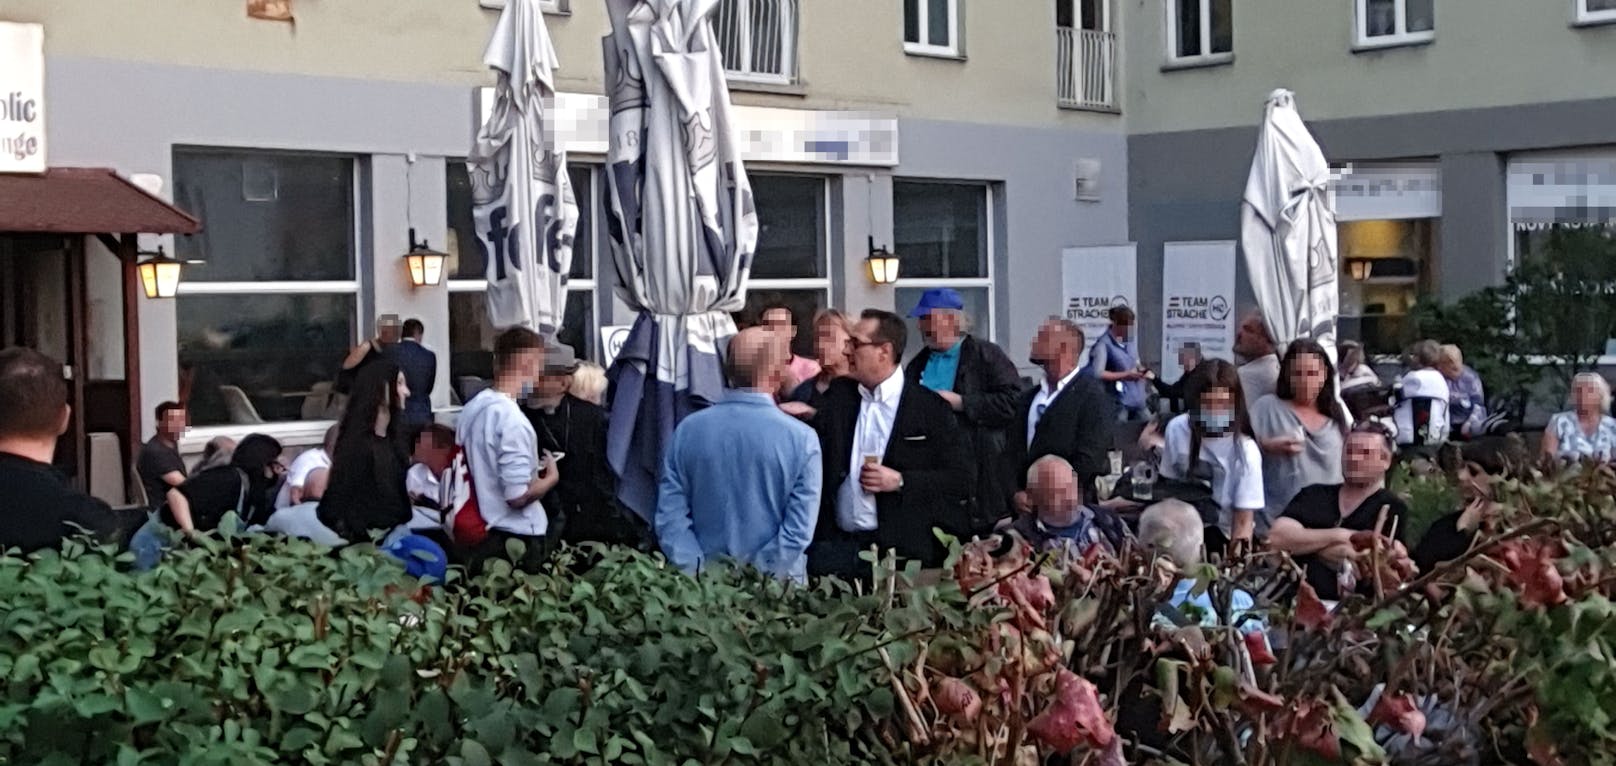 HC Strache geht in seiner Nachbarschaft auf Stimmenfang